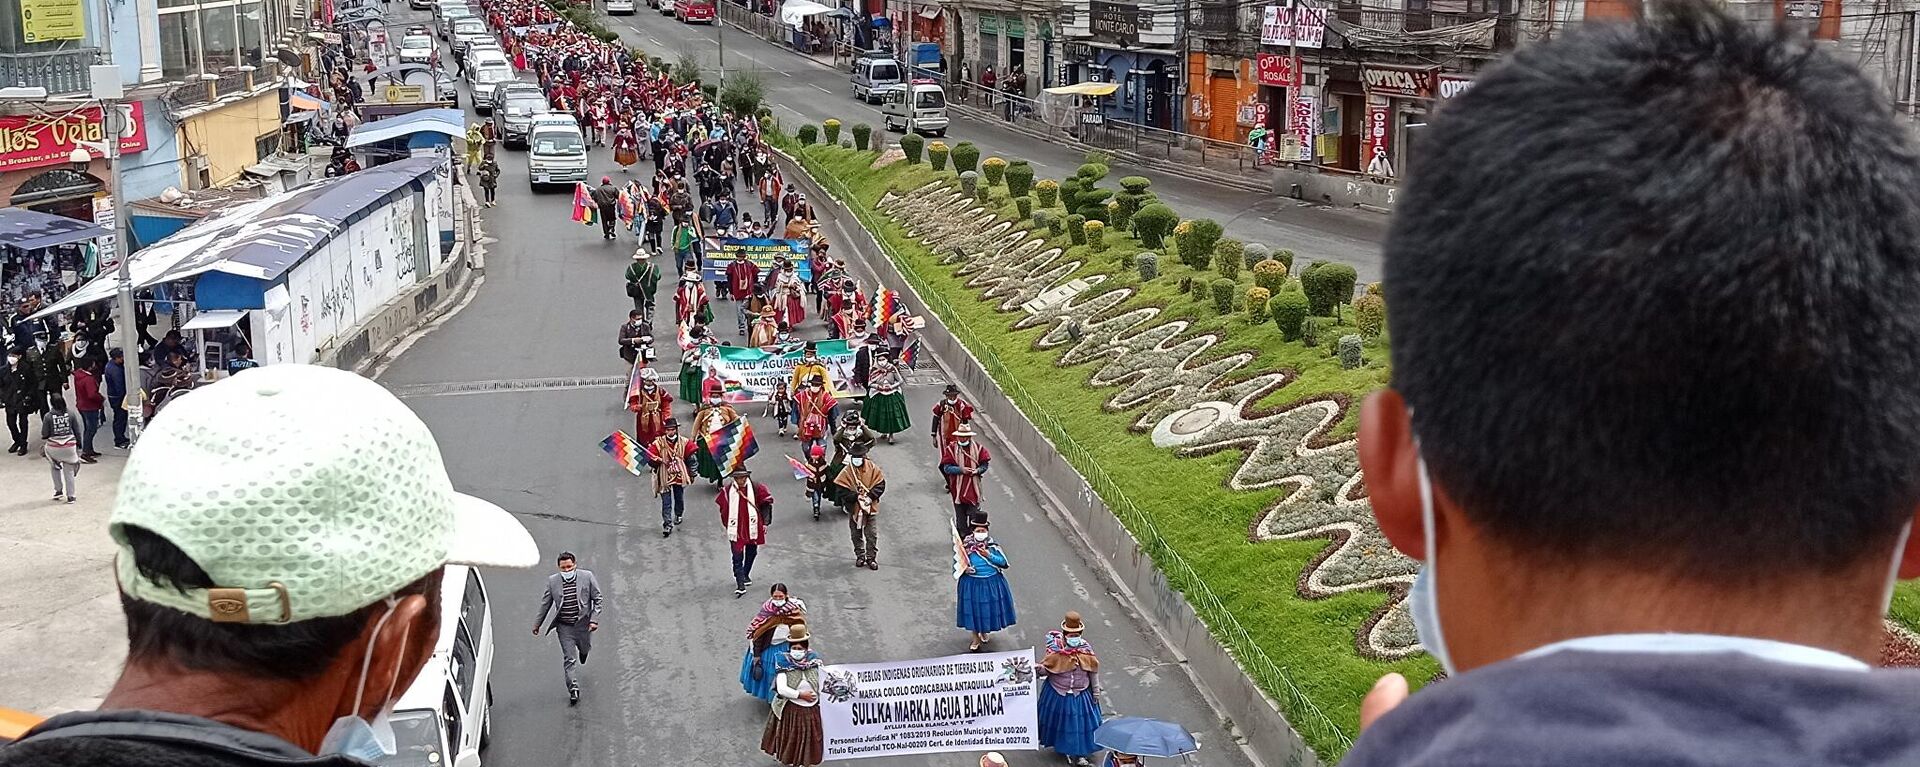 La marcha de campesinos e indígenas en La Paz reclamando justicia por los muertos en las masacres de 2019 - Sputnik Mundo, 1920, 22.03.2021